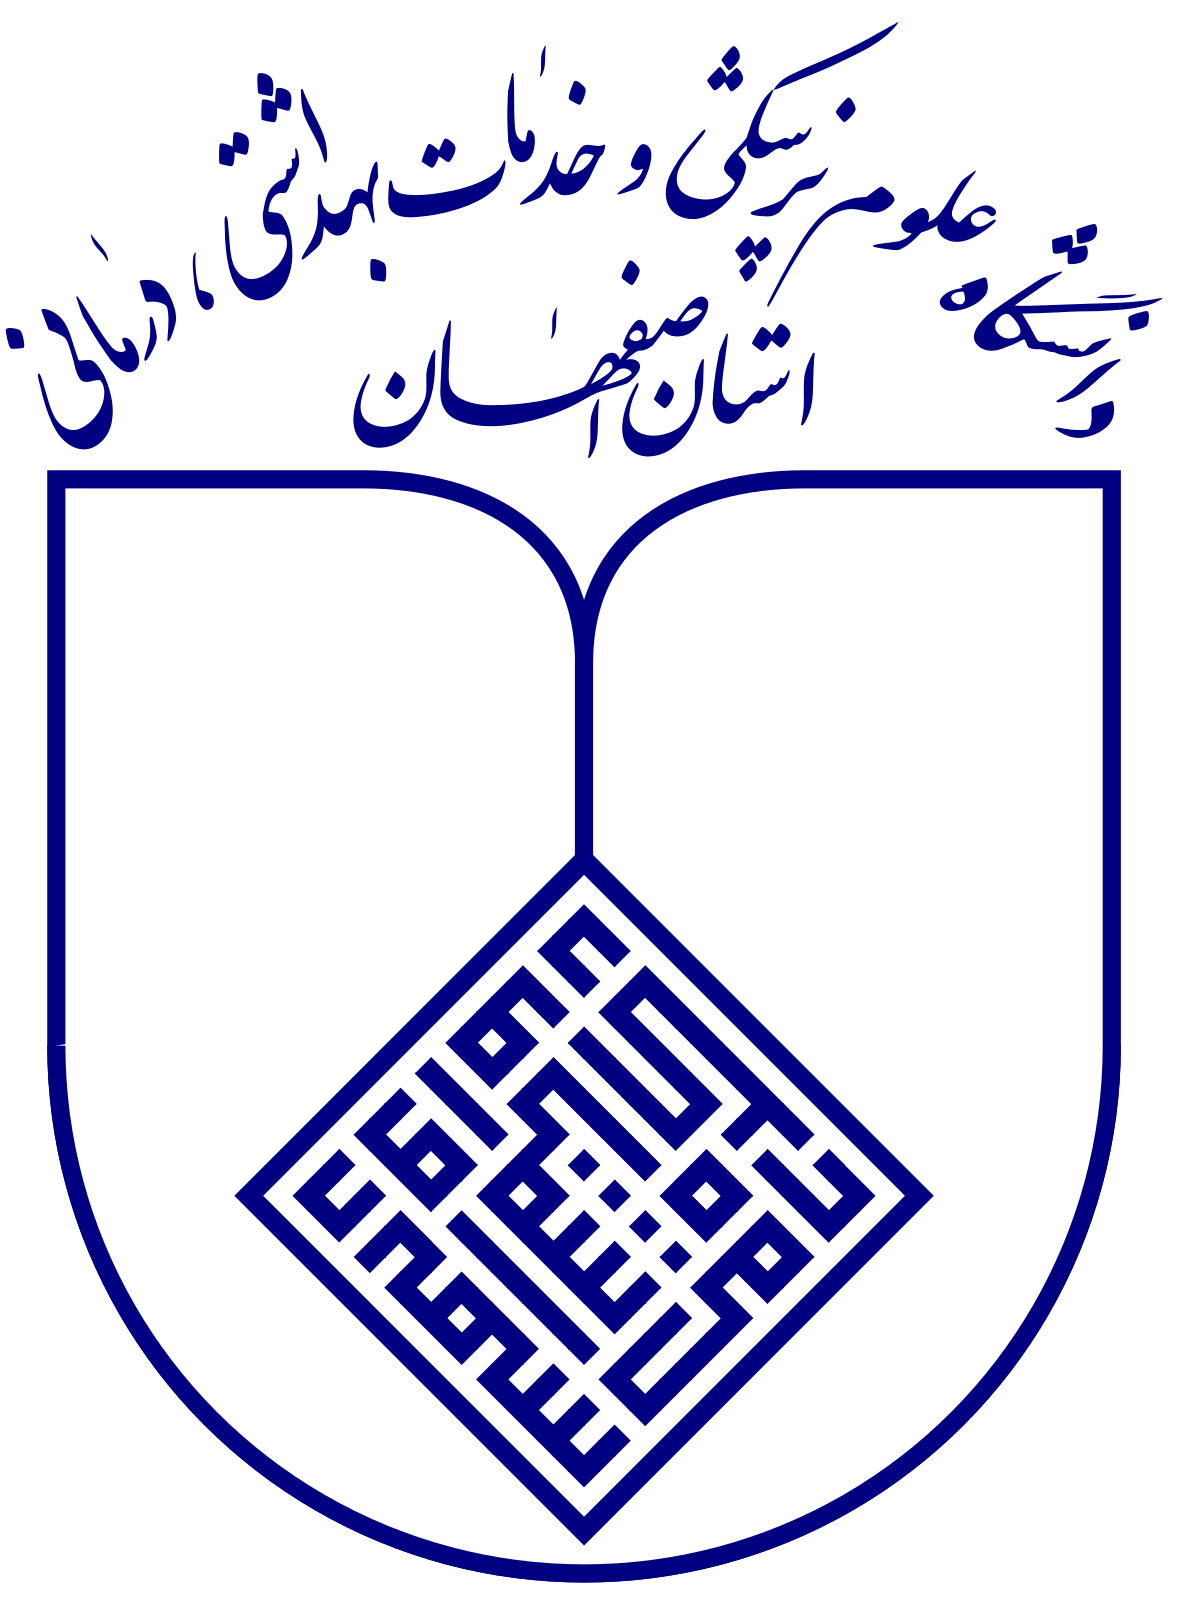 دانشگاه علوم پزشکی اصفهان